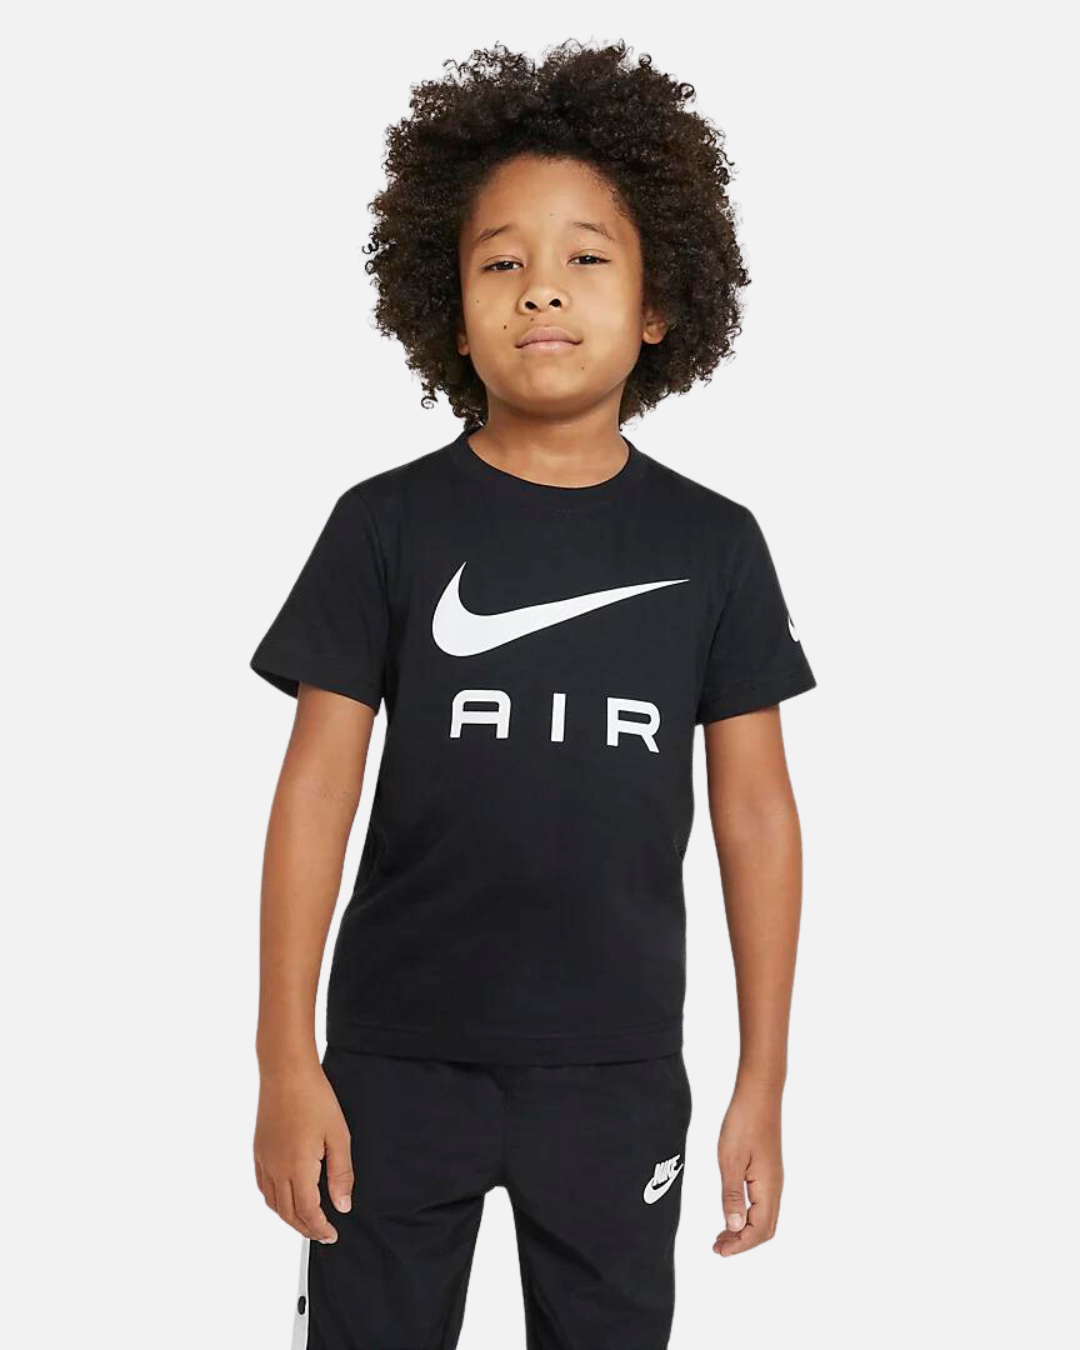 Nike Air Kids T-Shirt - Black